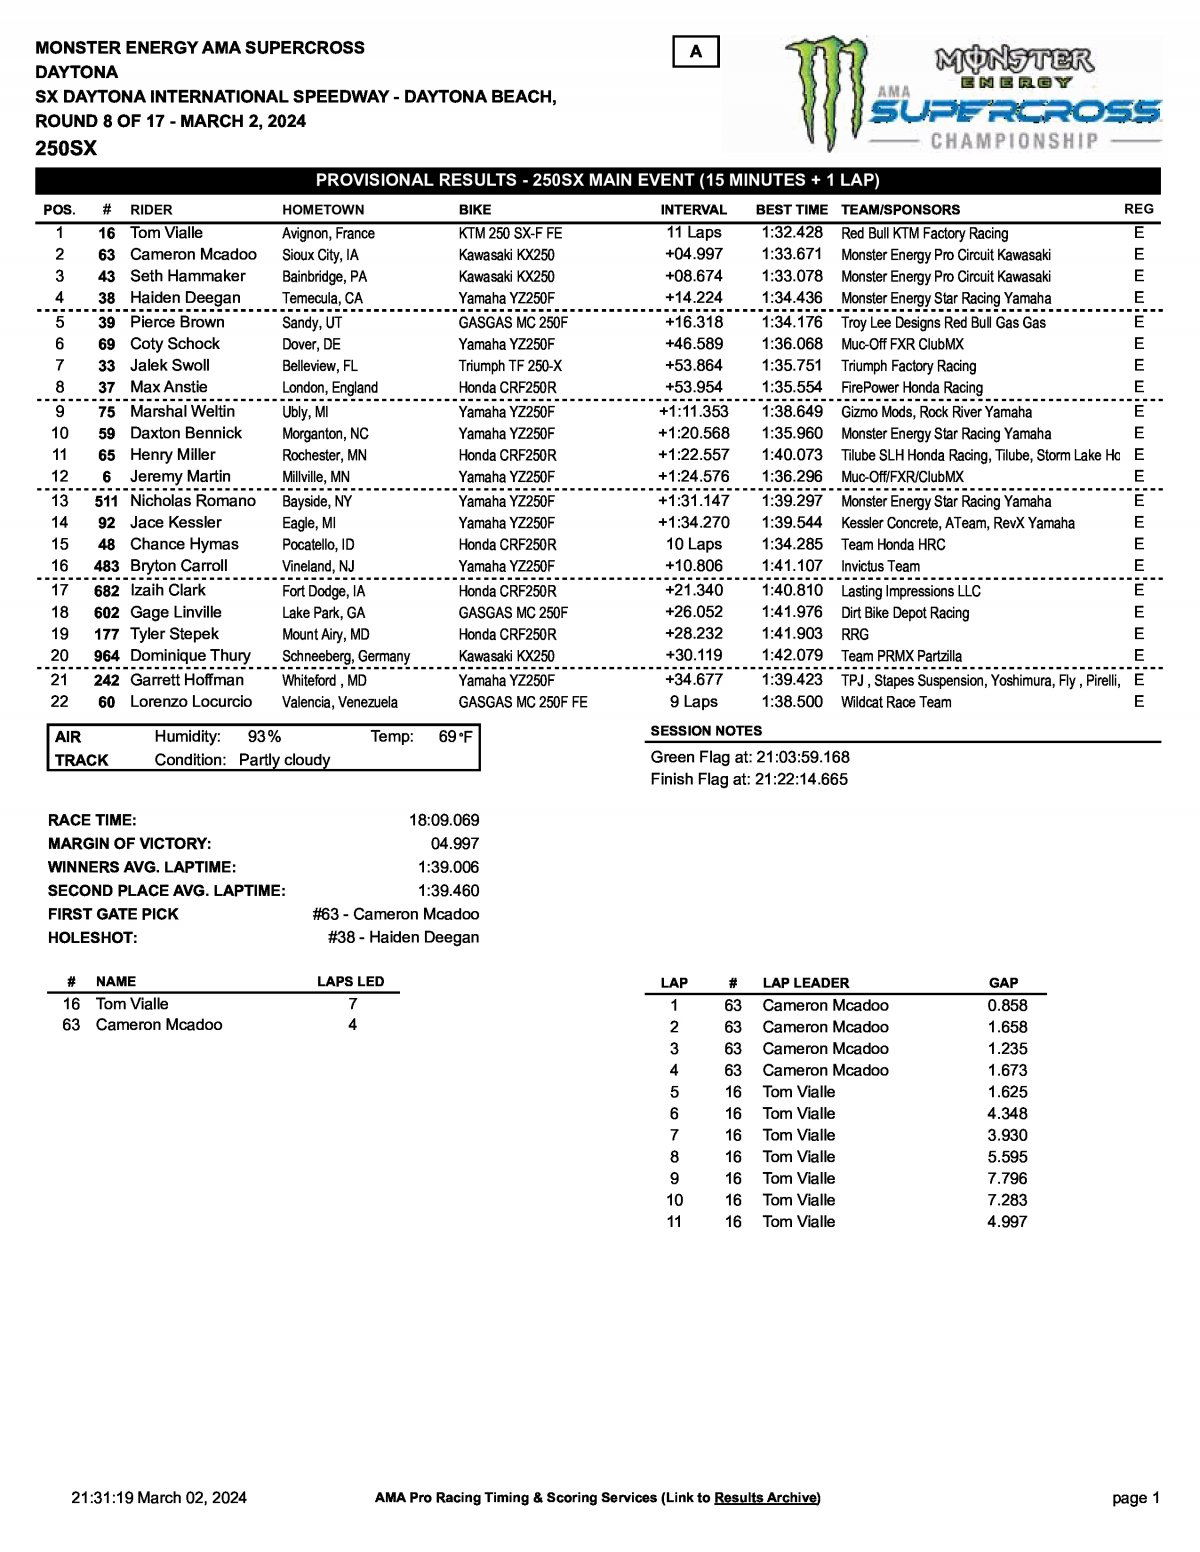 Результаты 8 этапа AMA Supercross 250SX в Дайтоне (2.03.2024)